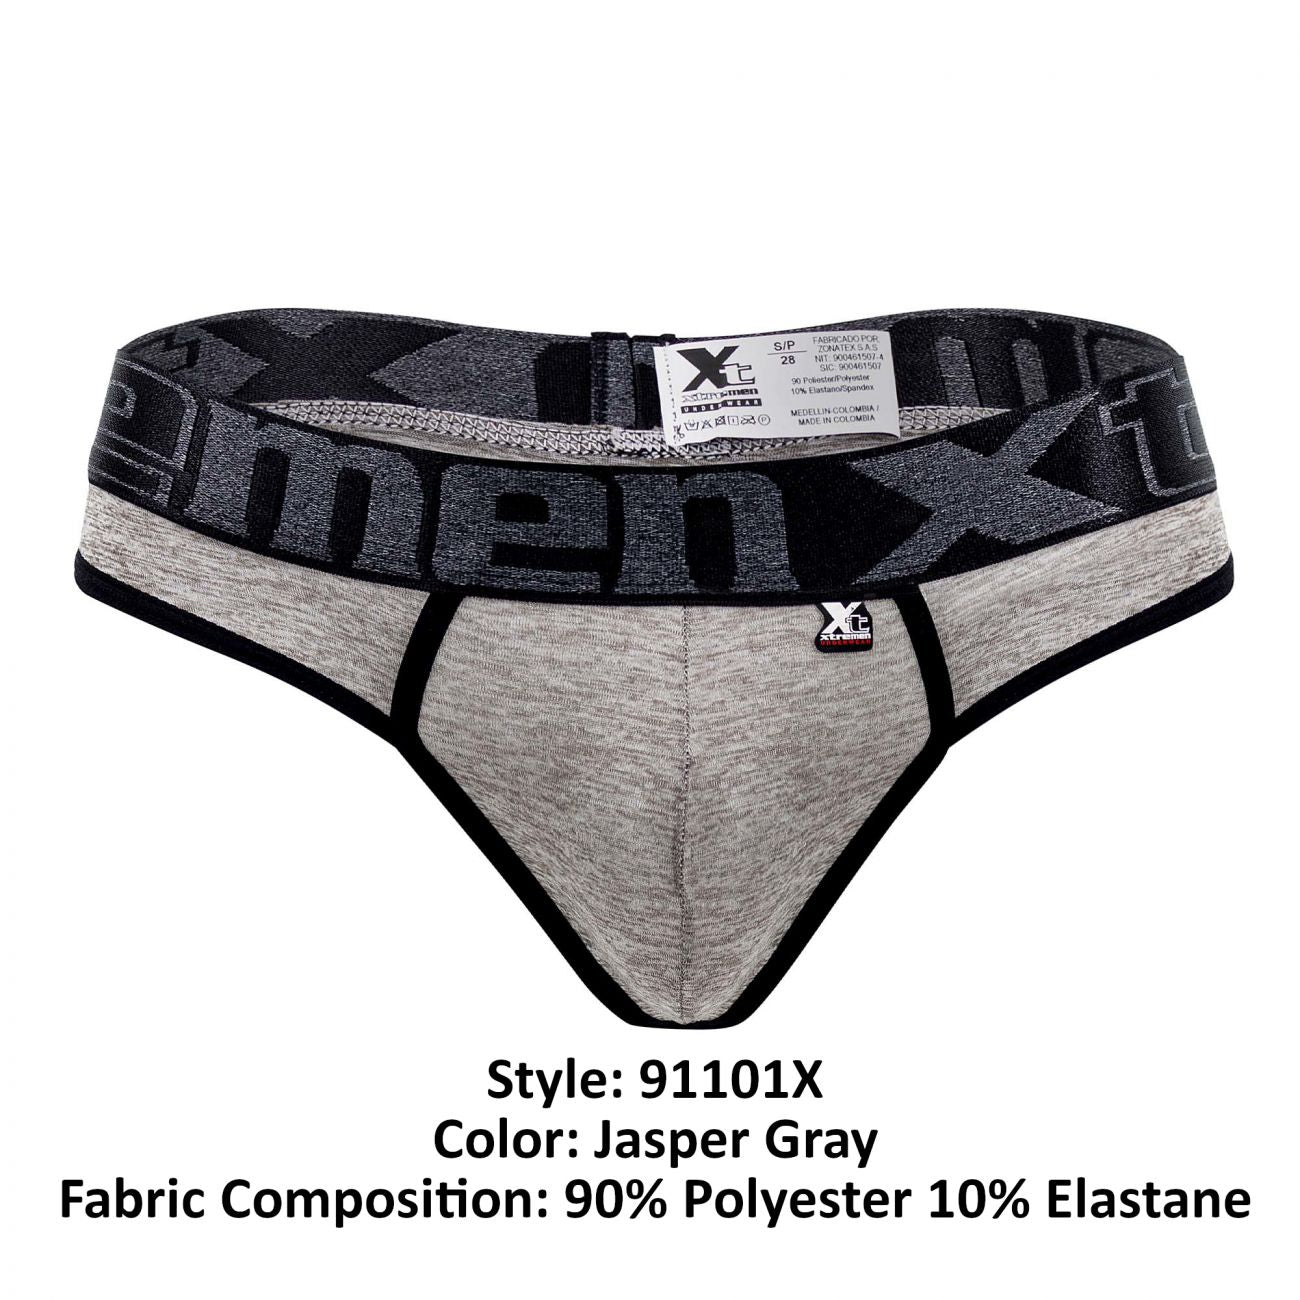 Xtremen 91101X Microfiber Thongs Jasper Gray Plus Sizes